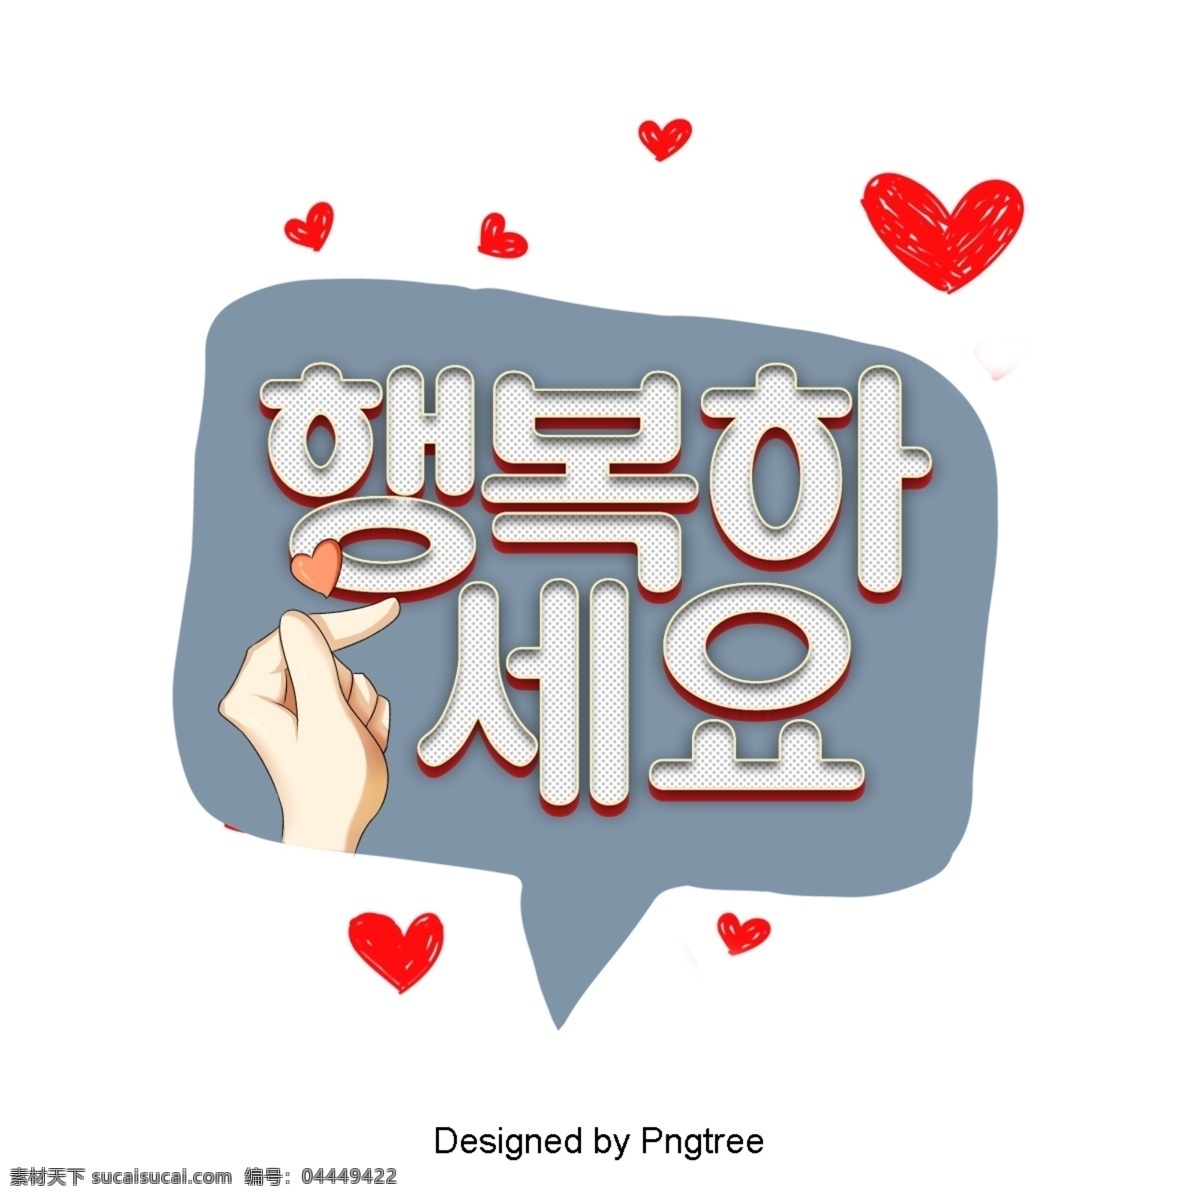 一个 快乐 的卡 通 时尚 场景 对话 气泡 低声 说话 泡泡 帧 聊 字形 语风 现场 韩国 动画片 现代 可爱 浪漫 爱 幸福